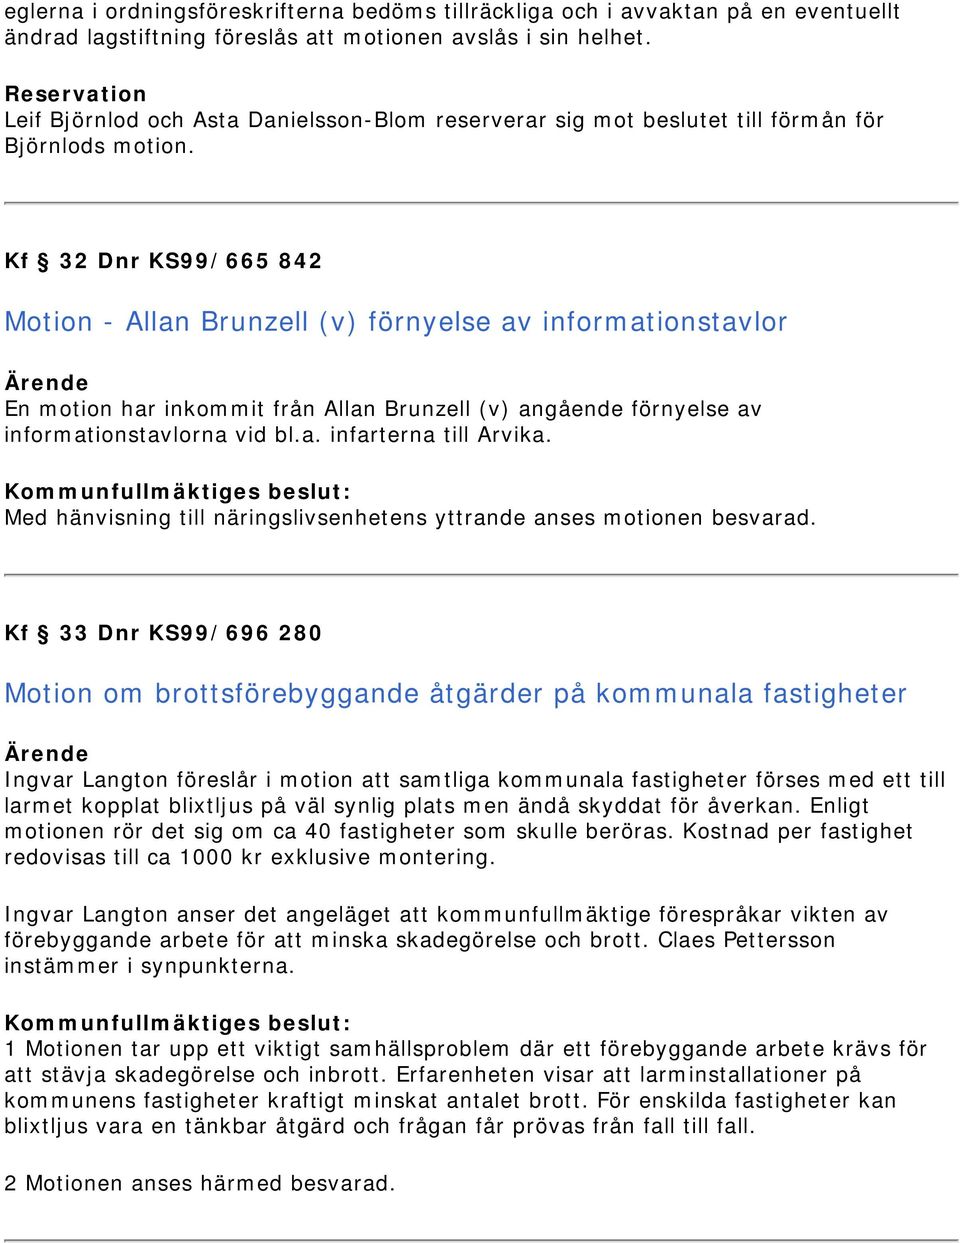 Kf 32 Dnr KS99/665 842 Motion - Allan Brunzell (v) förnyelse av informationstavlor En motion har inkommit från Allan Brunzell (v) angående förnyelse av informationstavlorna vid bl.a. infarterna till Arvika.